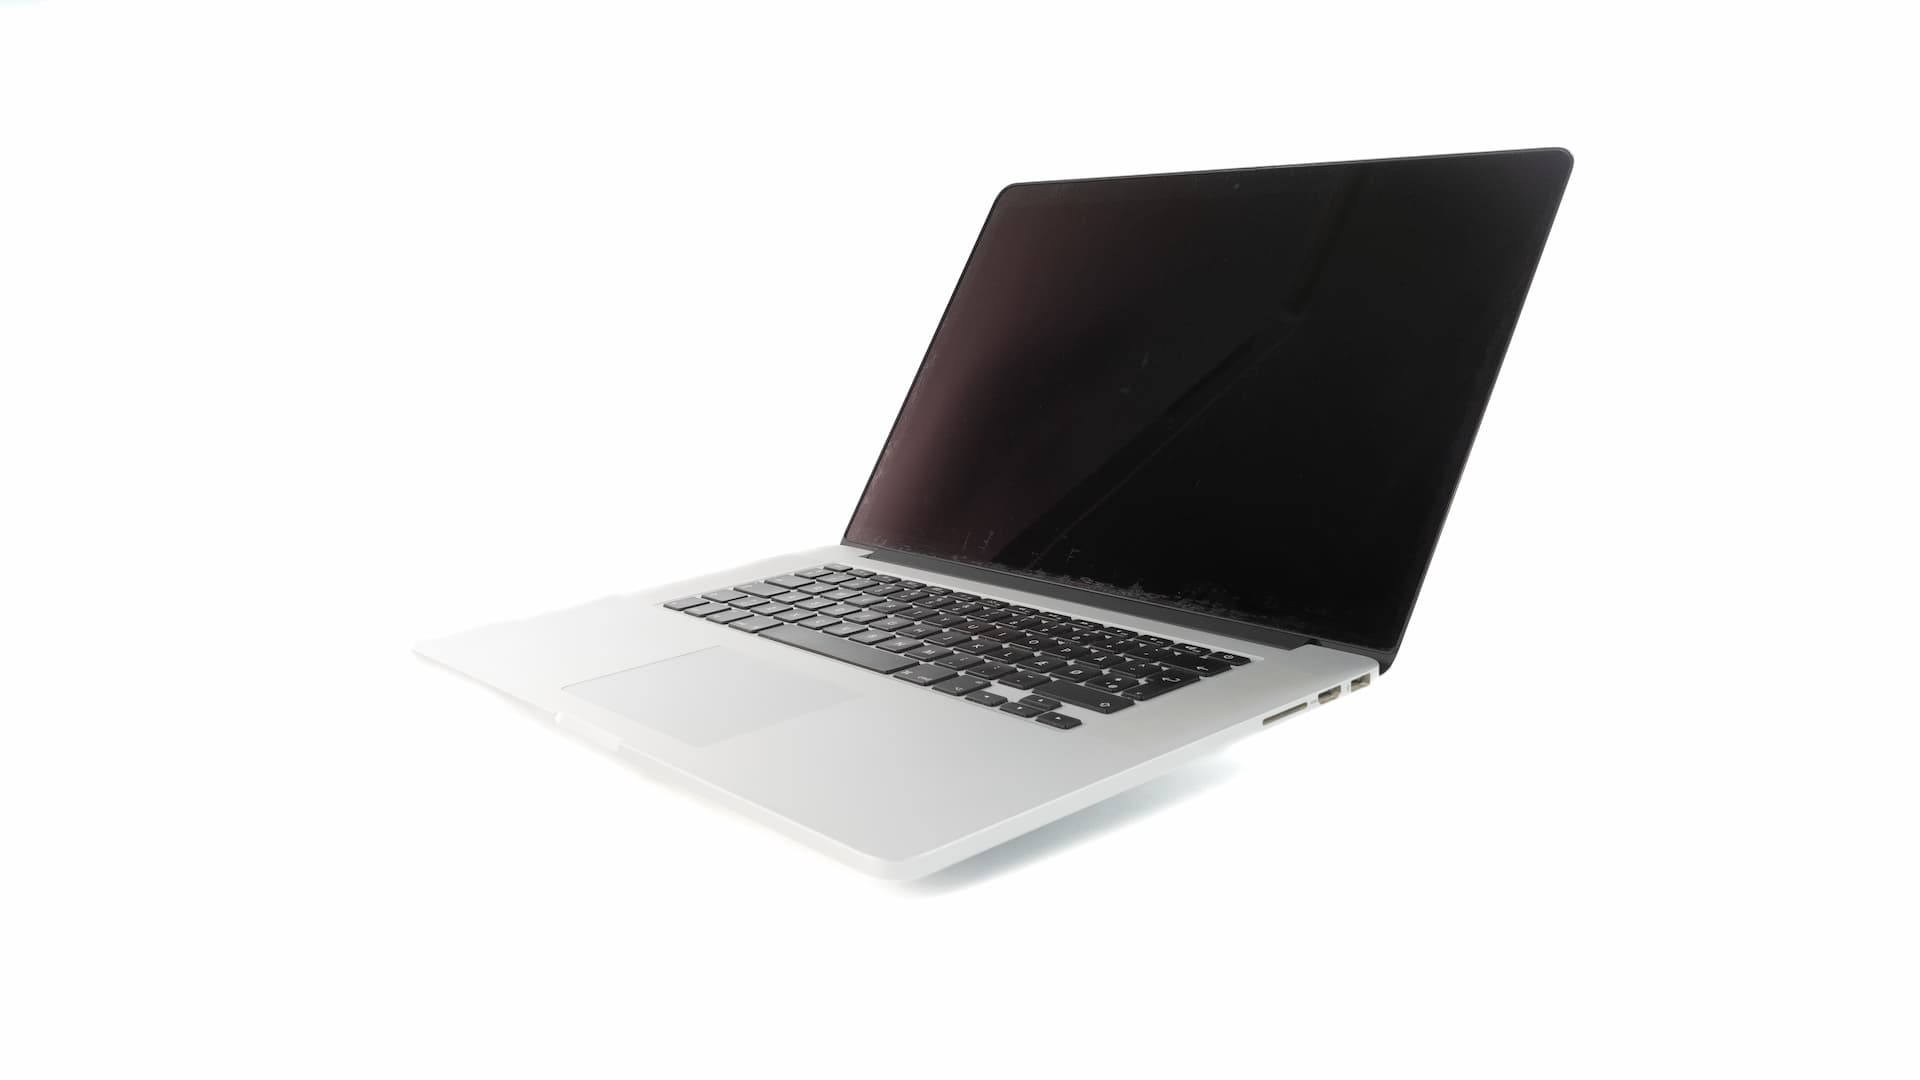 MacBook-Pro-Late-2013-1.jpg Brugte computere